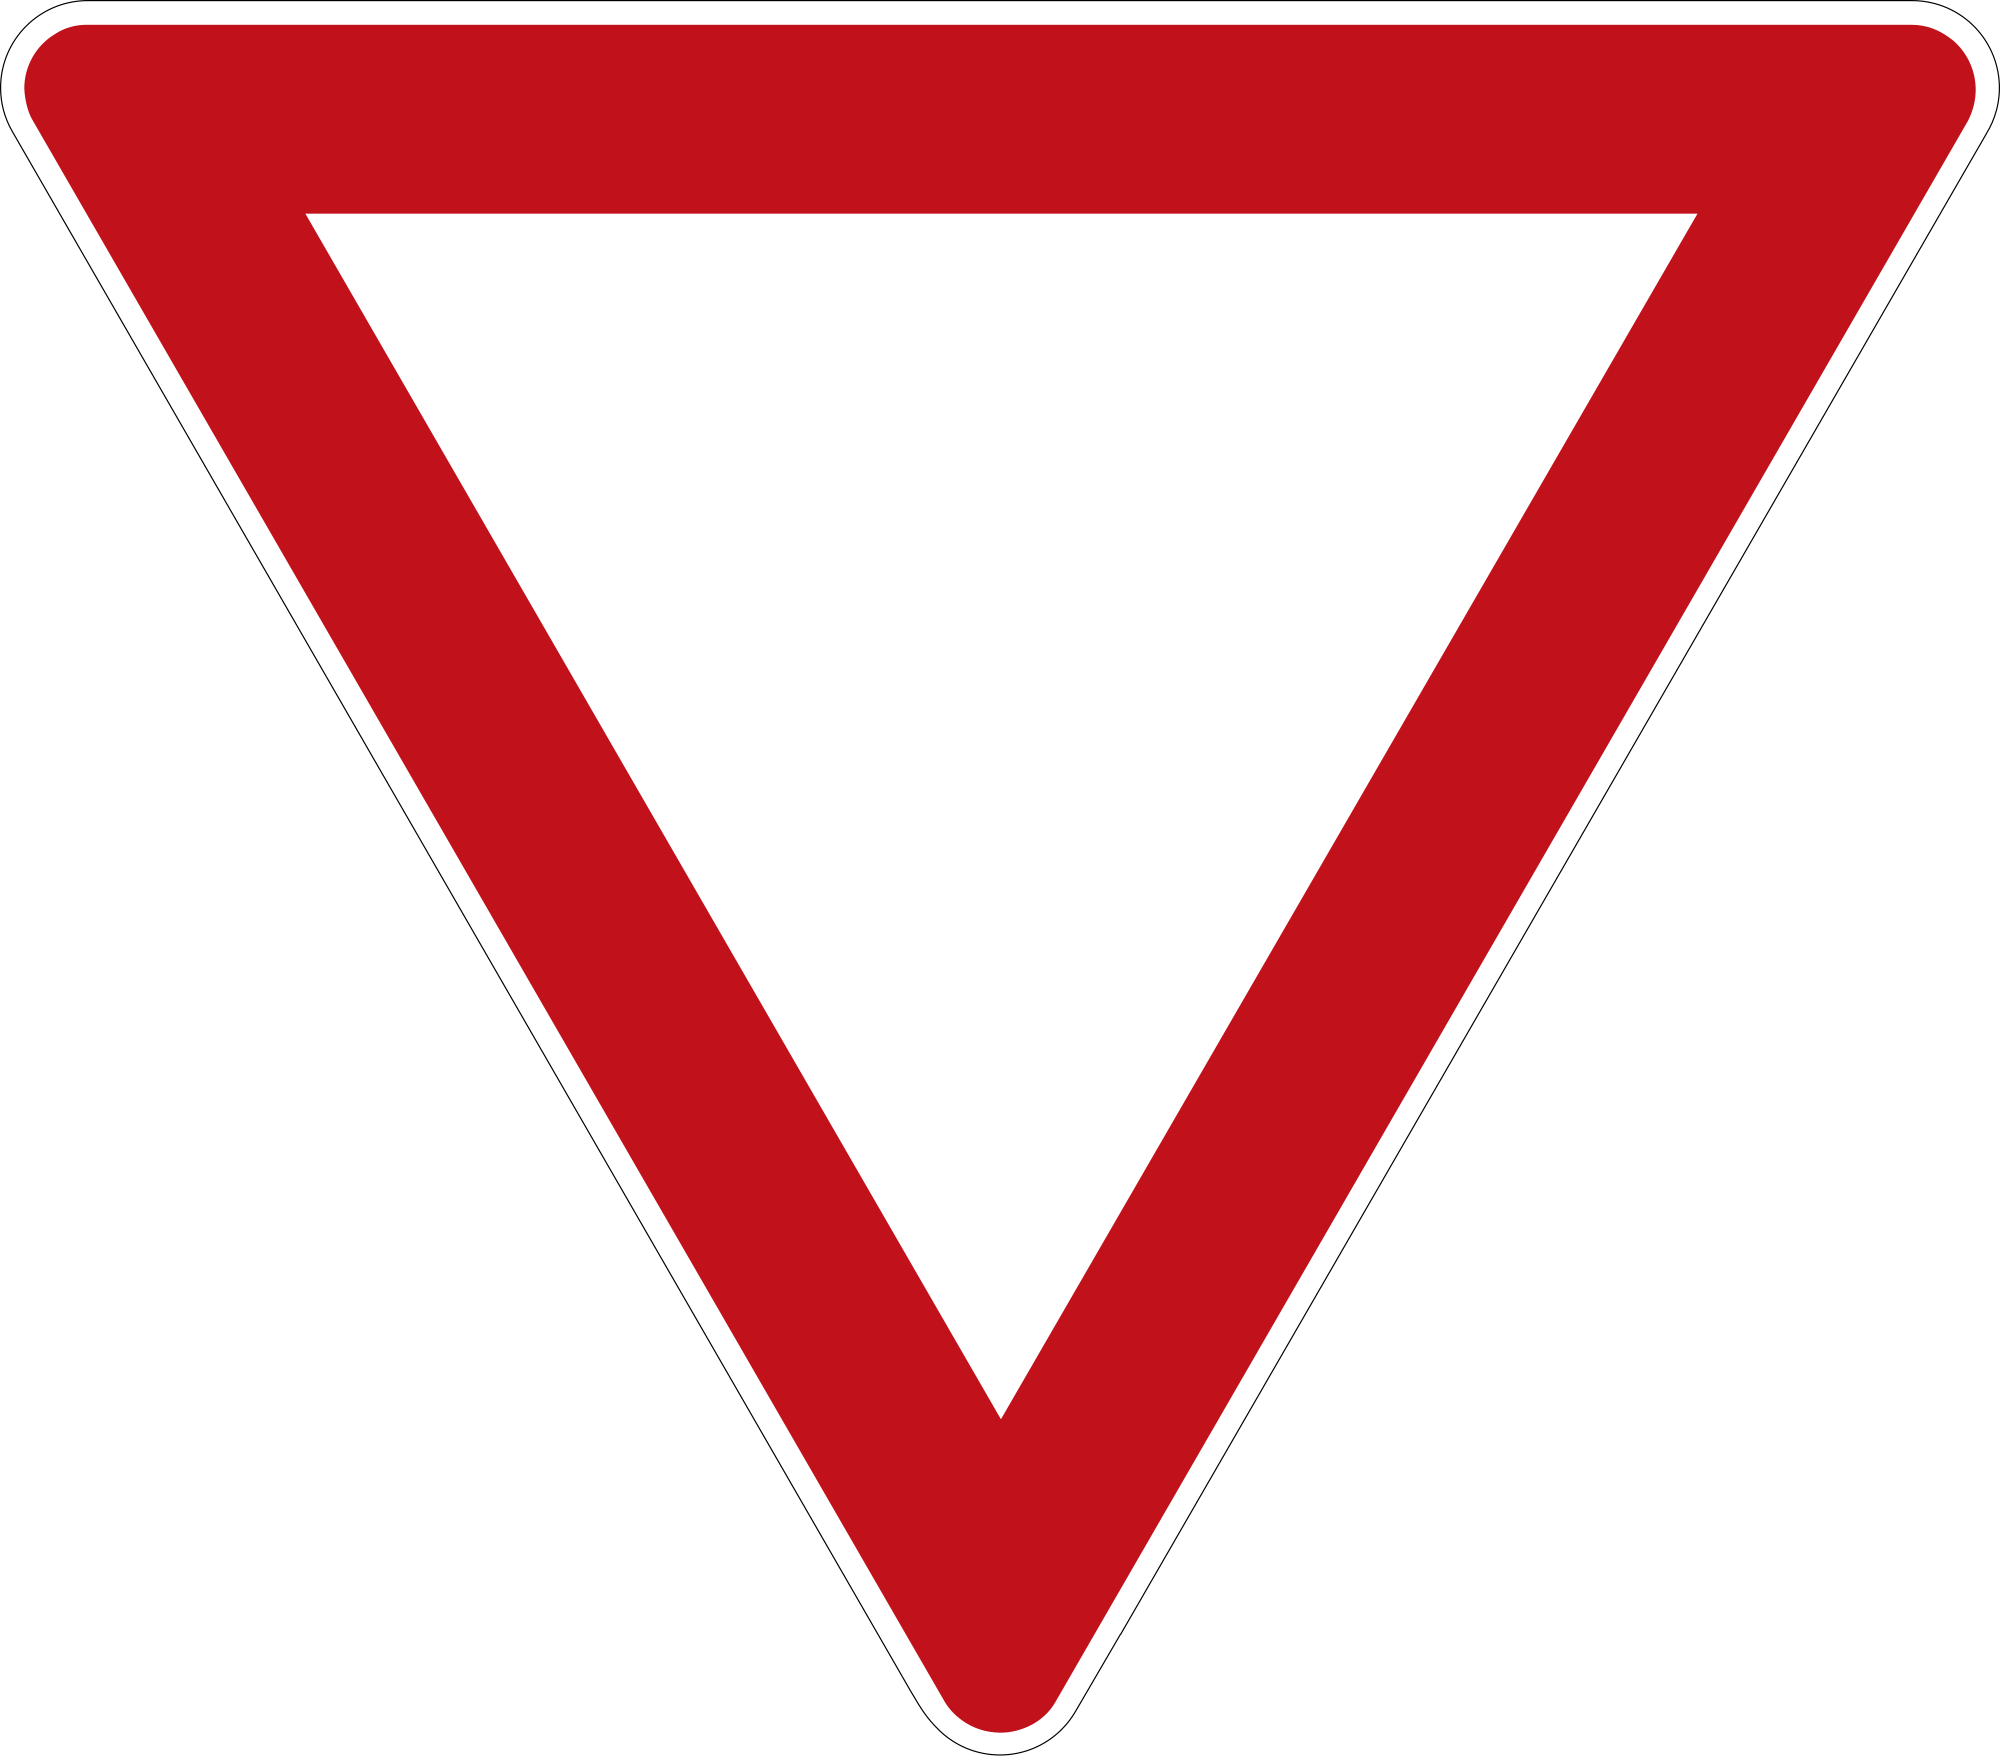 Знак полевой дороги. Знак Главная дорога в треугольнике. Дорожный знак 2.44.1. Треугольные дорожные знаки. Знаки дорожного движения Уступи дорогу.